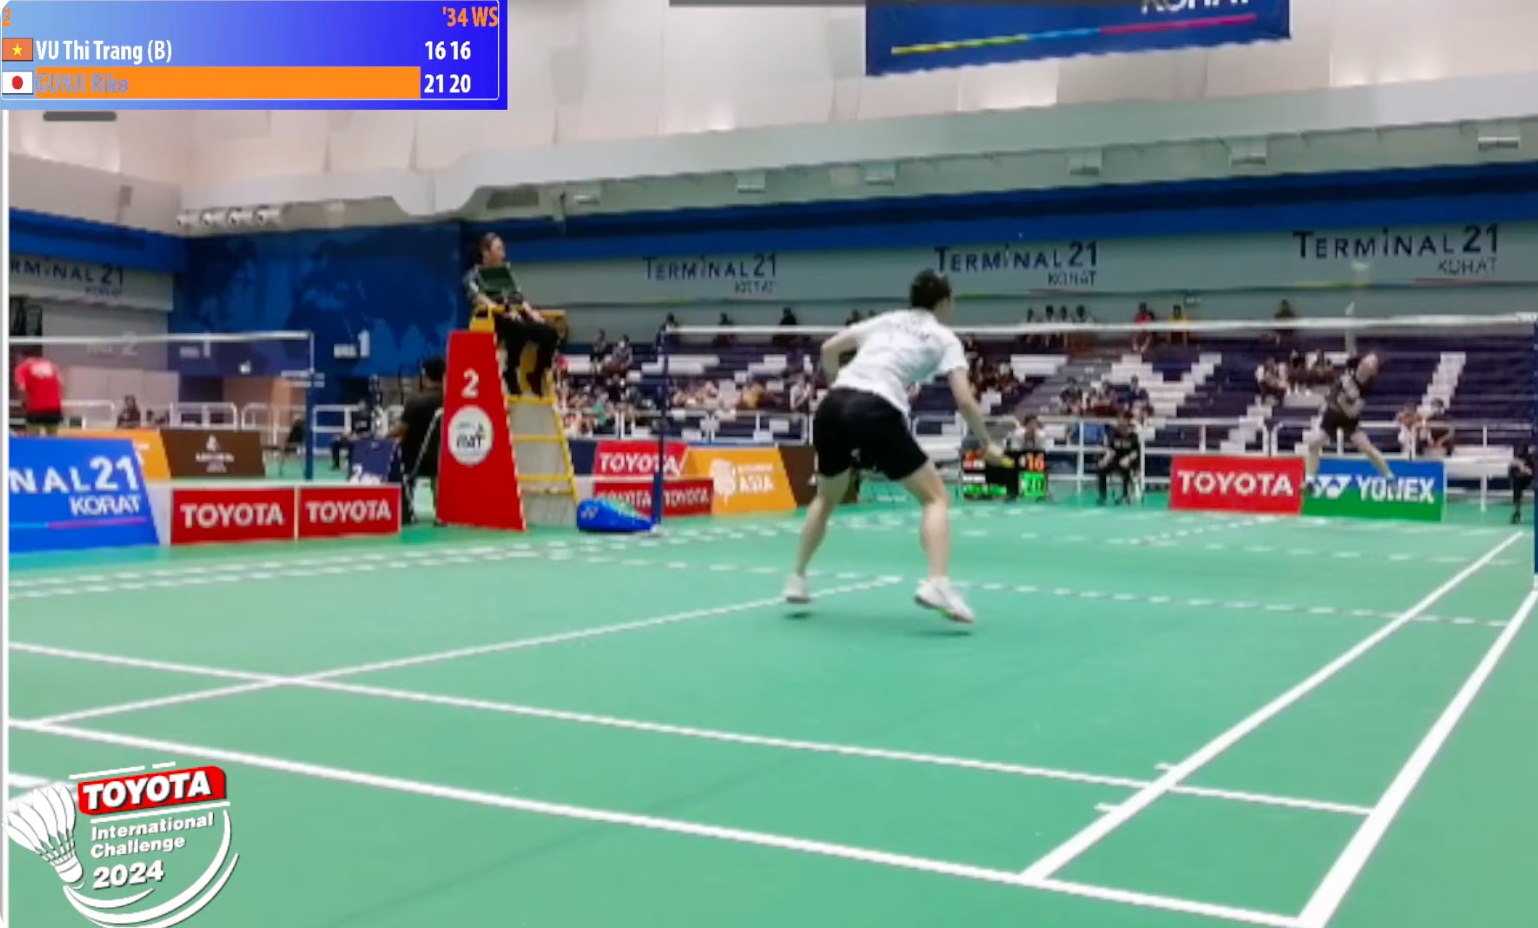 Thua tay vợt Nhật Bản kém 10 tuổi, Vũ Thị Trang dừng bước ở tứ kết giải cầu lông quốc tế Thái Lan- Ảnh 3.